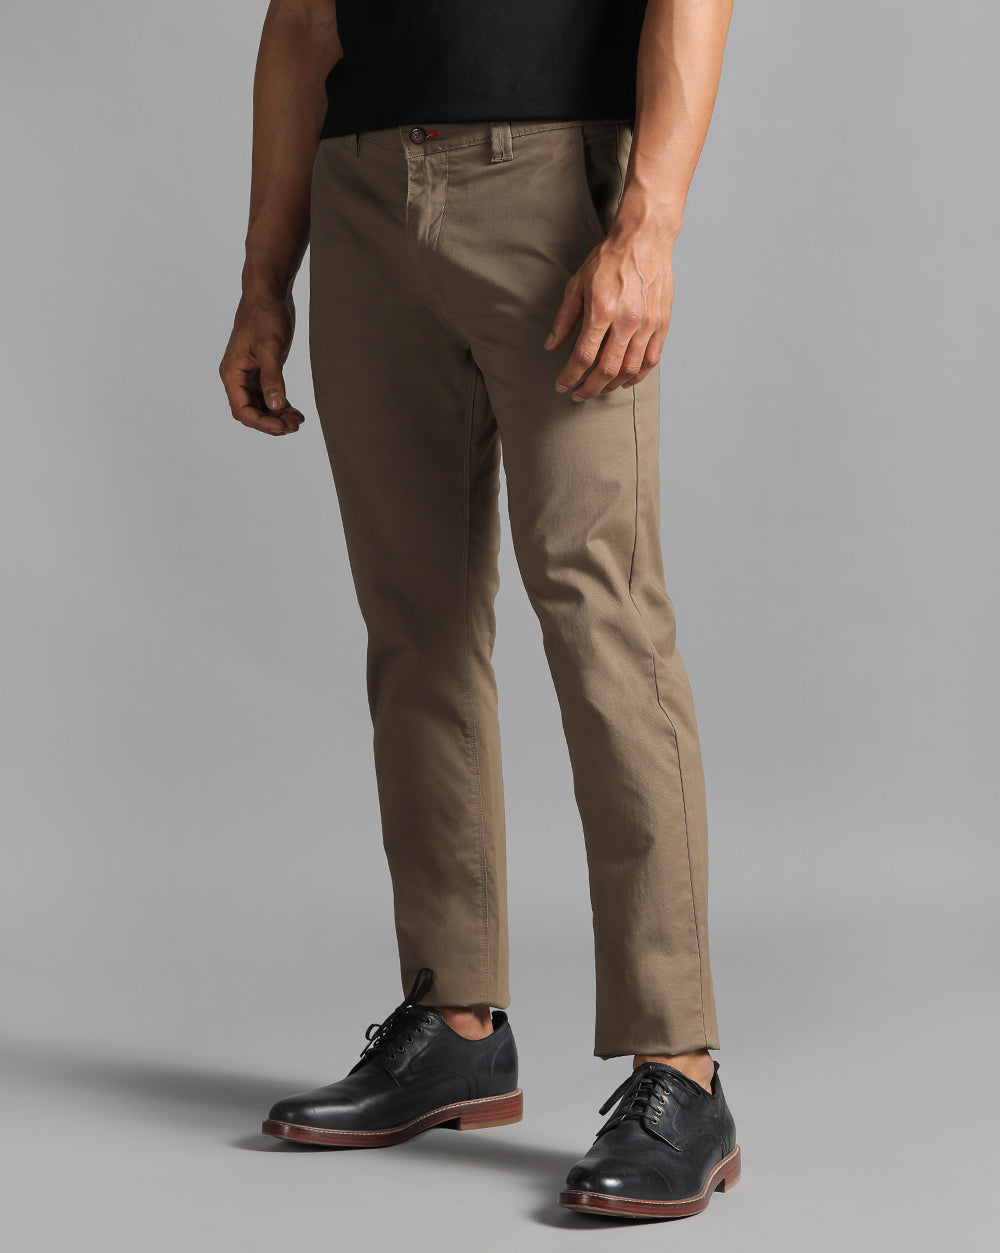 Vintage 90s Gap Easy Fit Corduroy Pants Size 34x29 Relaxed Wide Leg Tan  Khaki | eBay